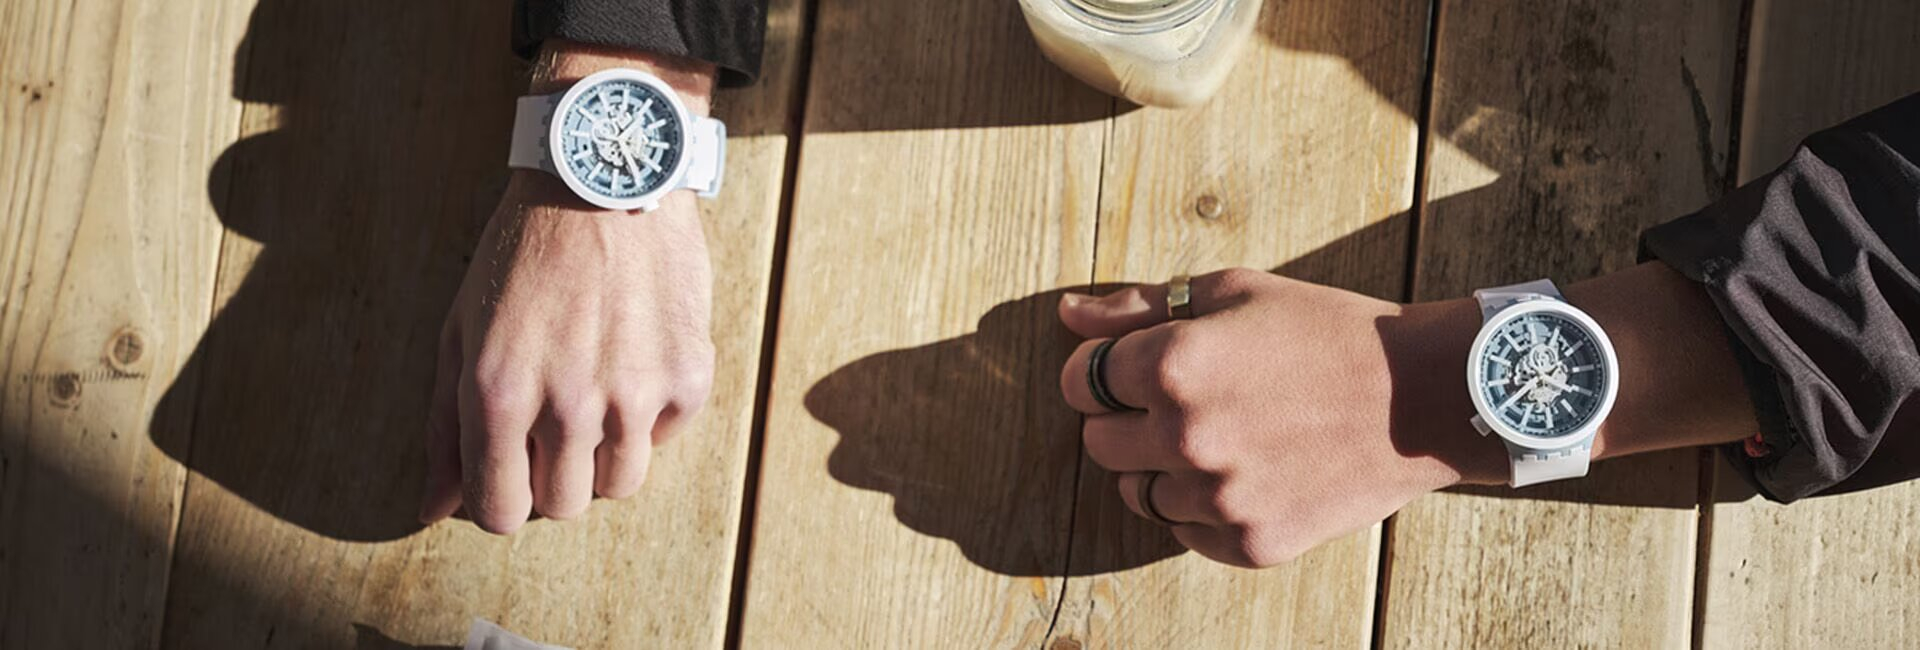 Часы Swatch Big Bold одеты на руку мужчины